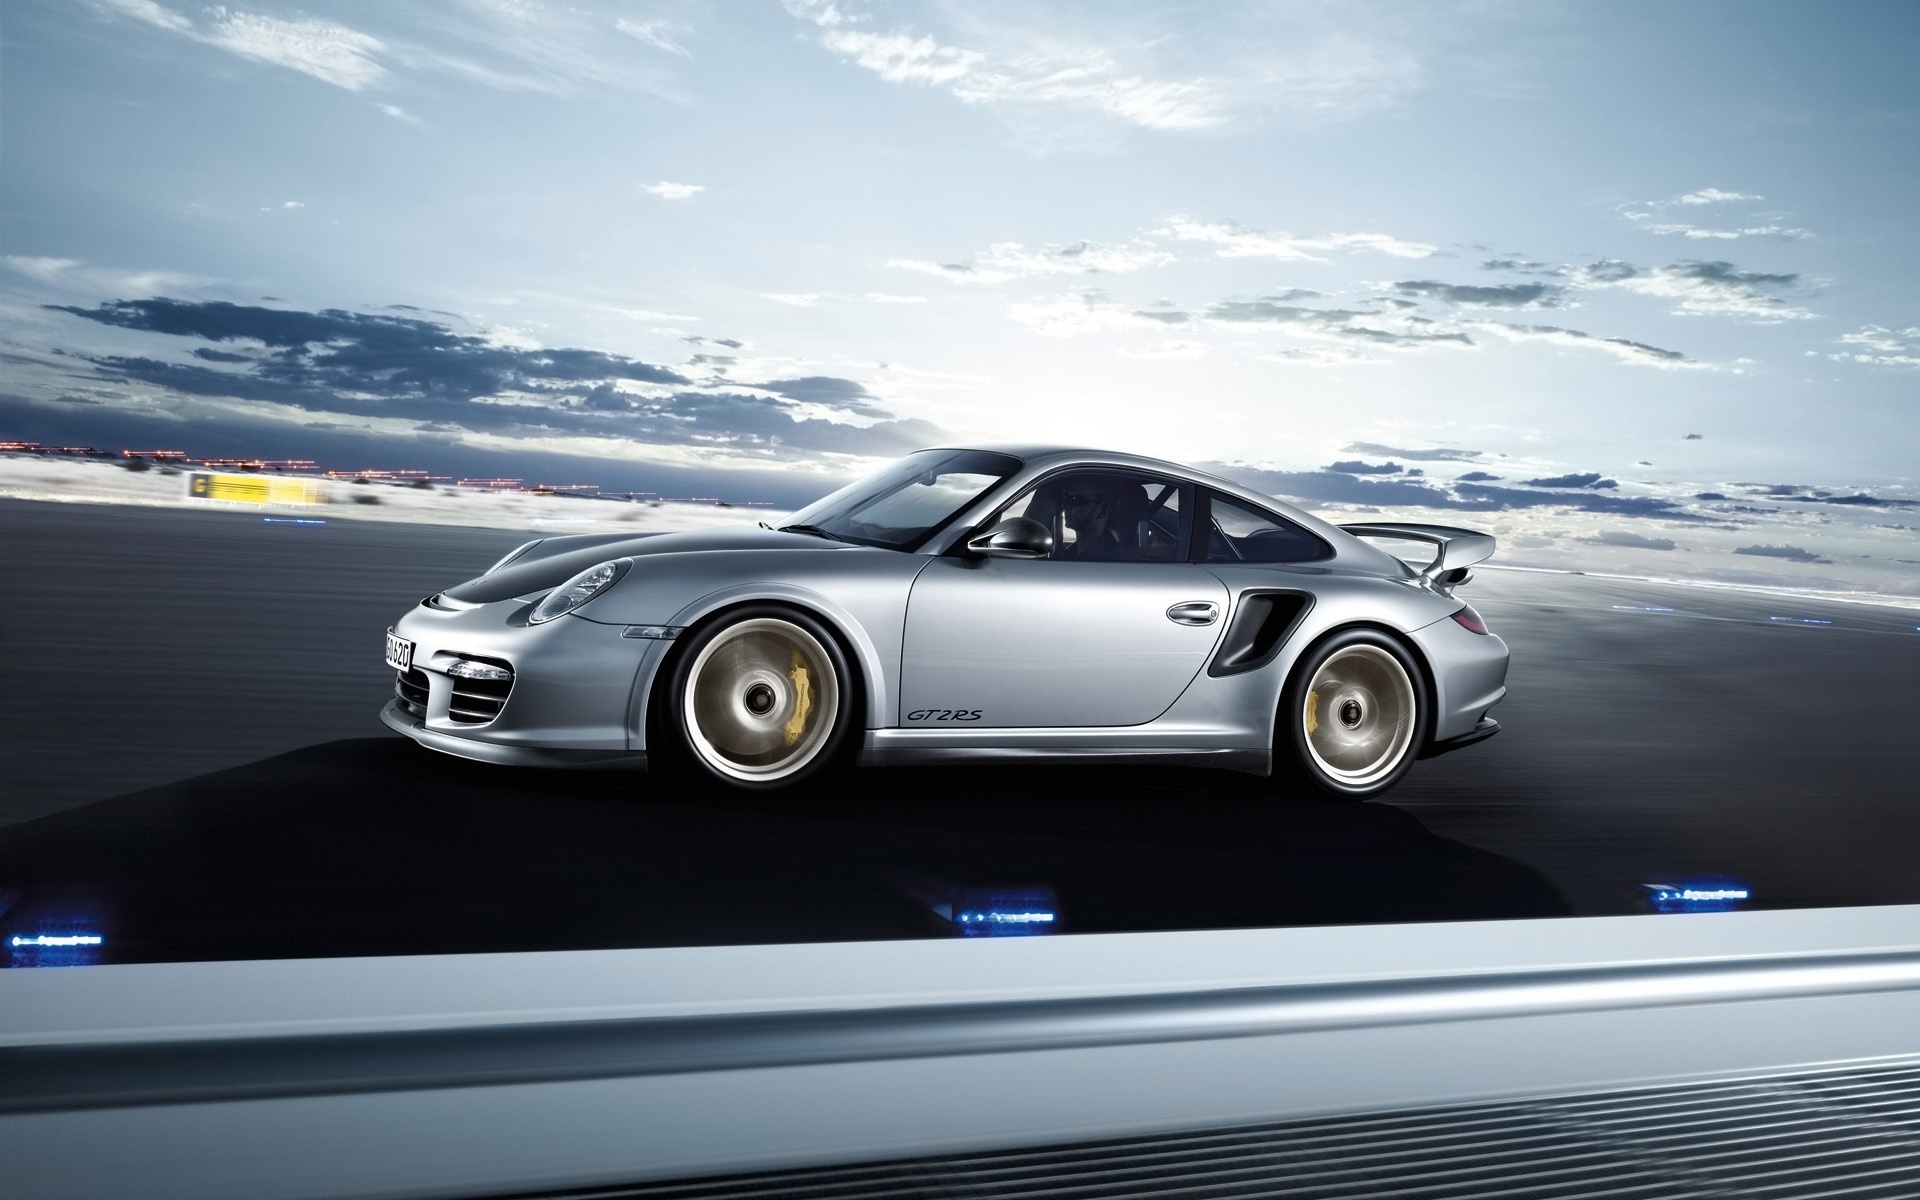 Porsche 911 GT2 RS 2011 Speed for 1920 x 1200 widescreen resolution